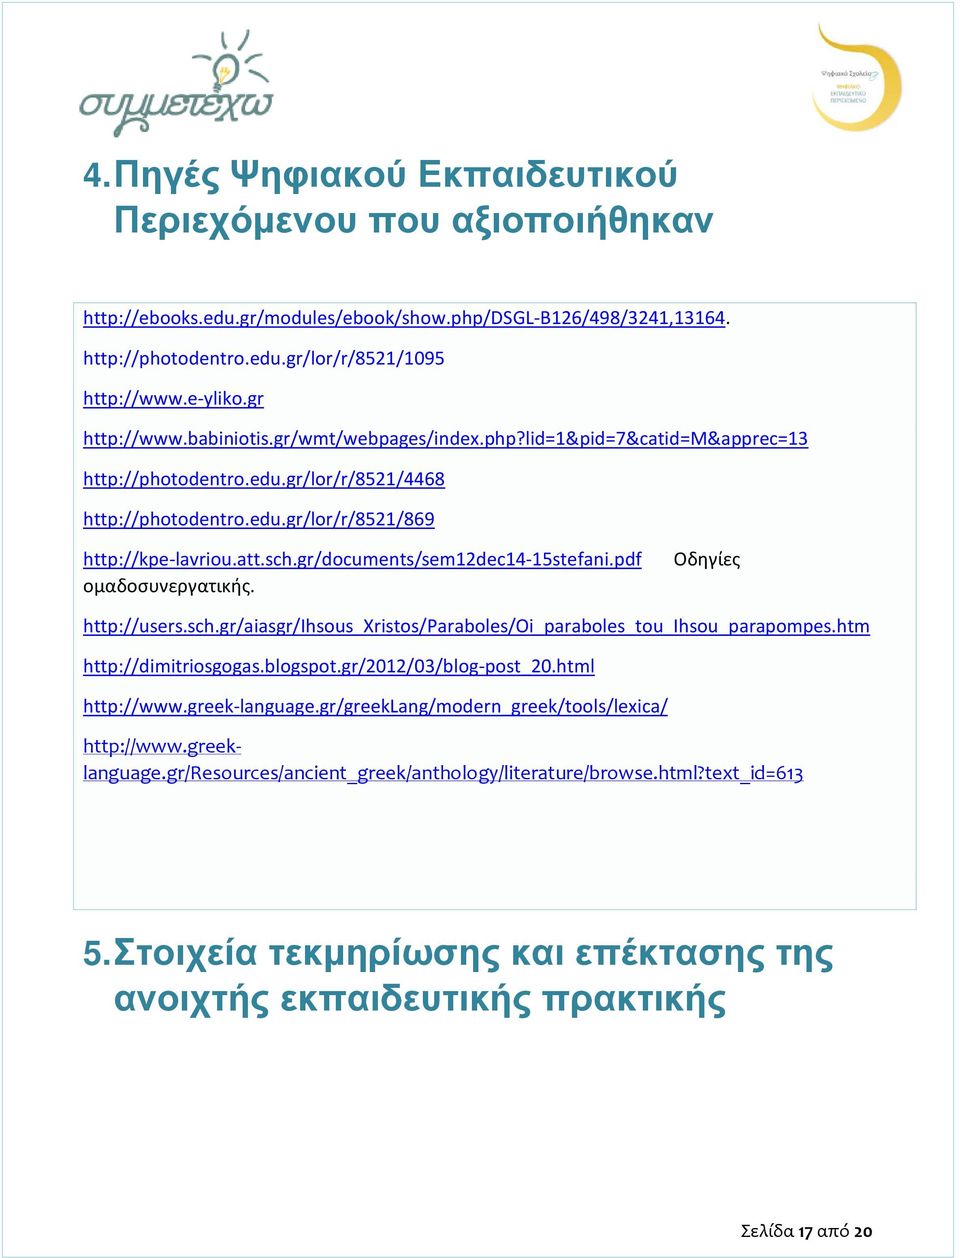 gr/documents/sem12dec14-15stefani.pdf ομαδοσυνεργατικής. Οδηγίες http://users.sch.gr/aiasgr/ihsous_xristos/paraboles/oi_paraboles_tou_ihsou_parapompes.htm http://dimitriosgogas.blogspot.